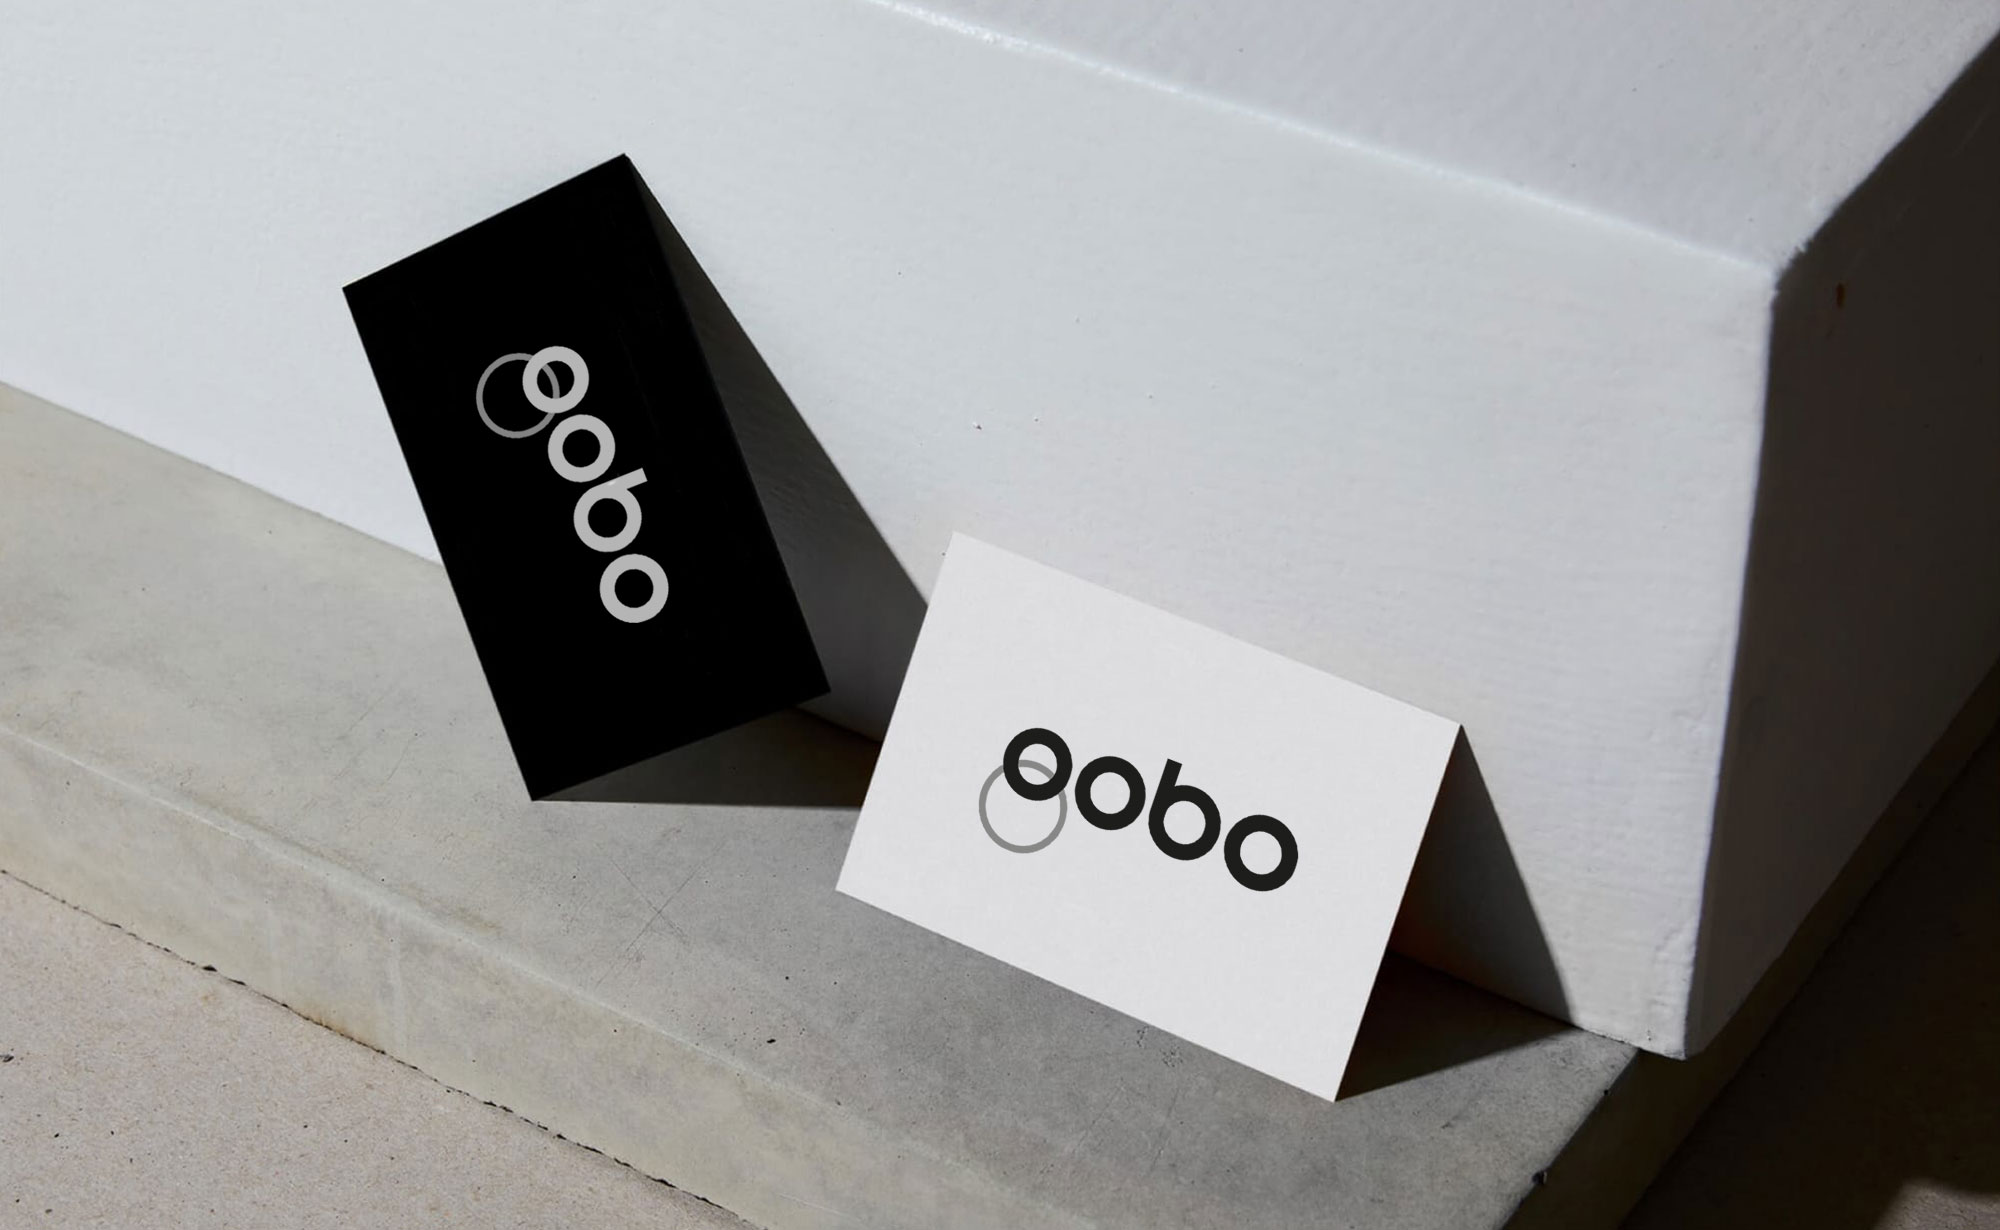 Diseño y desarrollo de identidad visual corporativa para Gobo. Detalle tarjetas de visita.